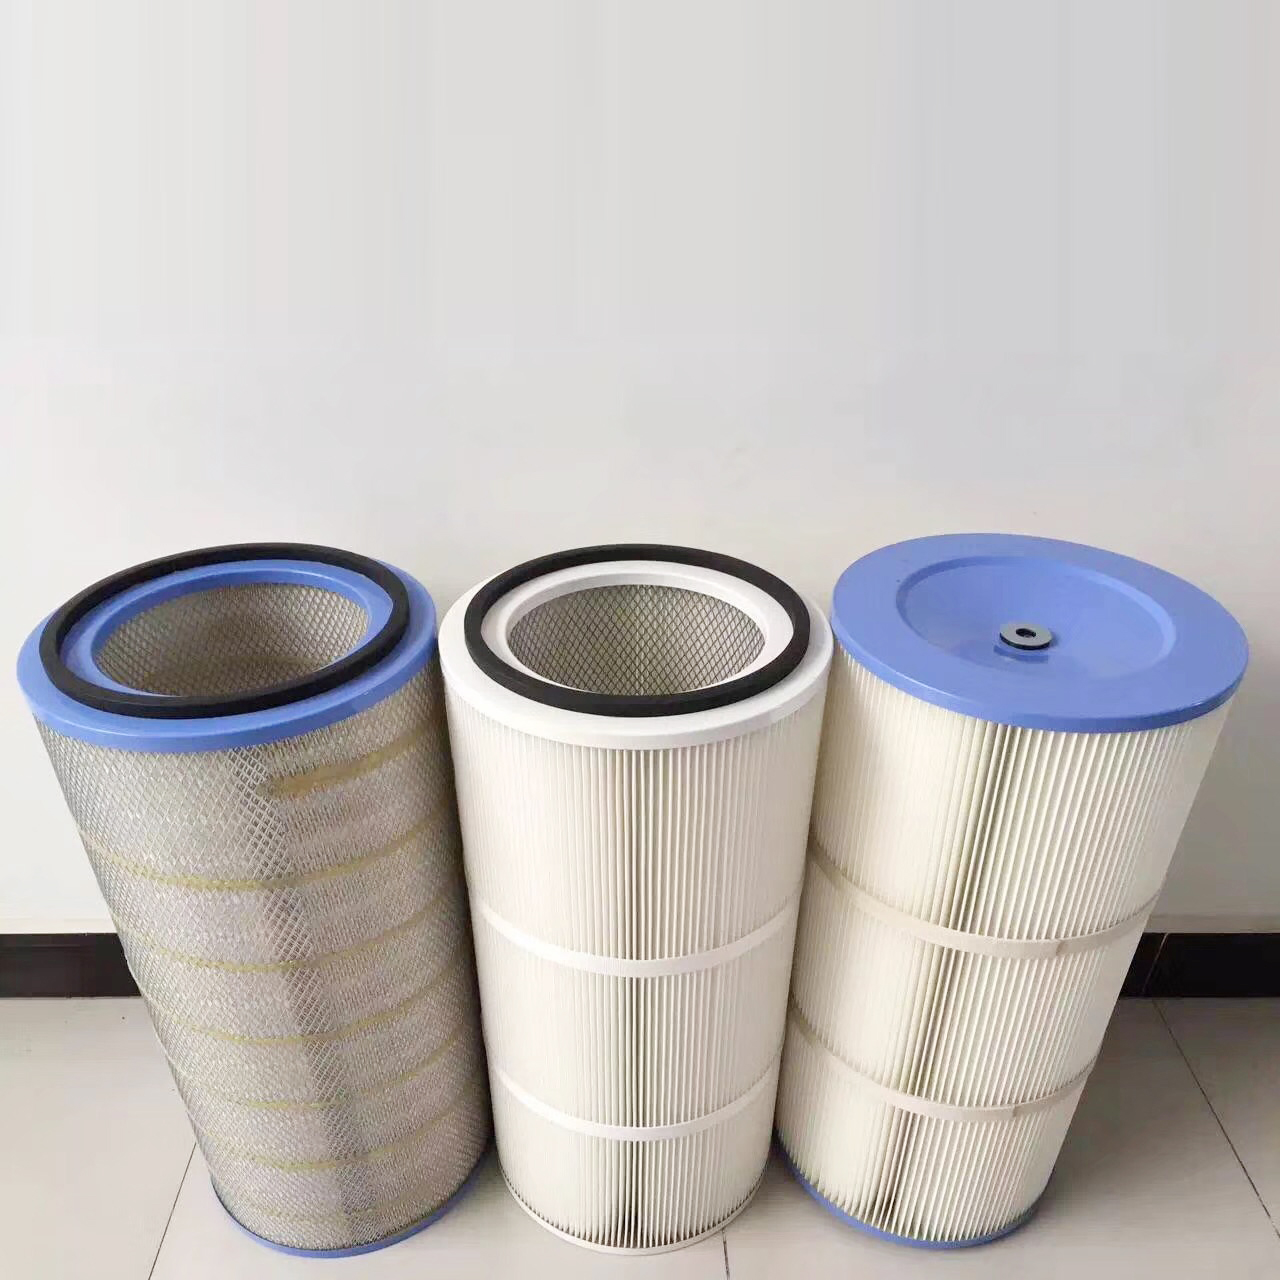 Фильтр пылесборника - Детали и аксессуары для рукавного фильтра - Канистровый фильтр пылесборника